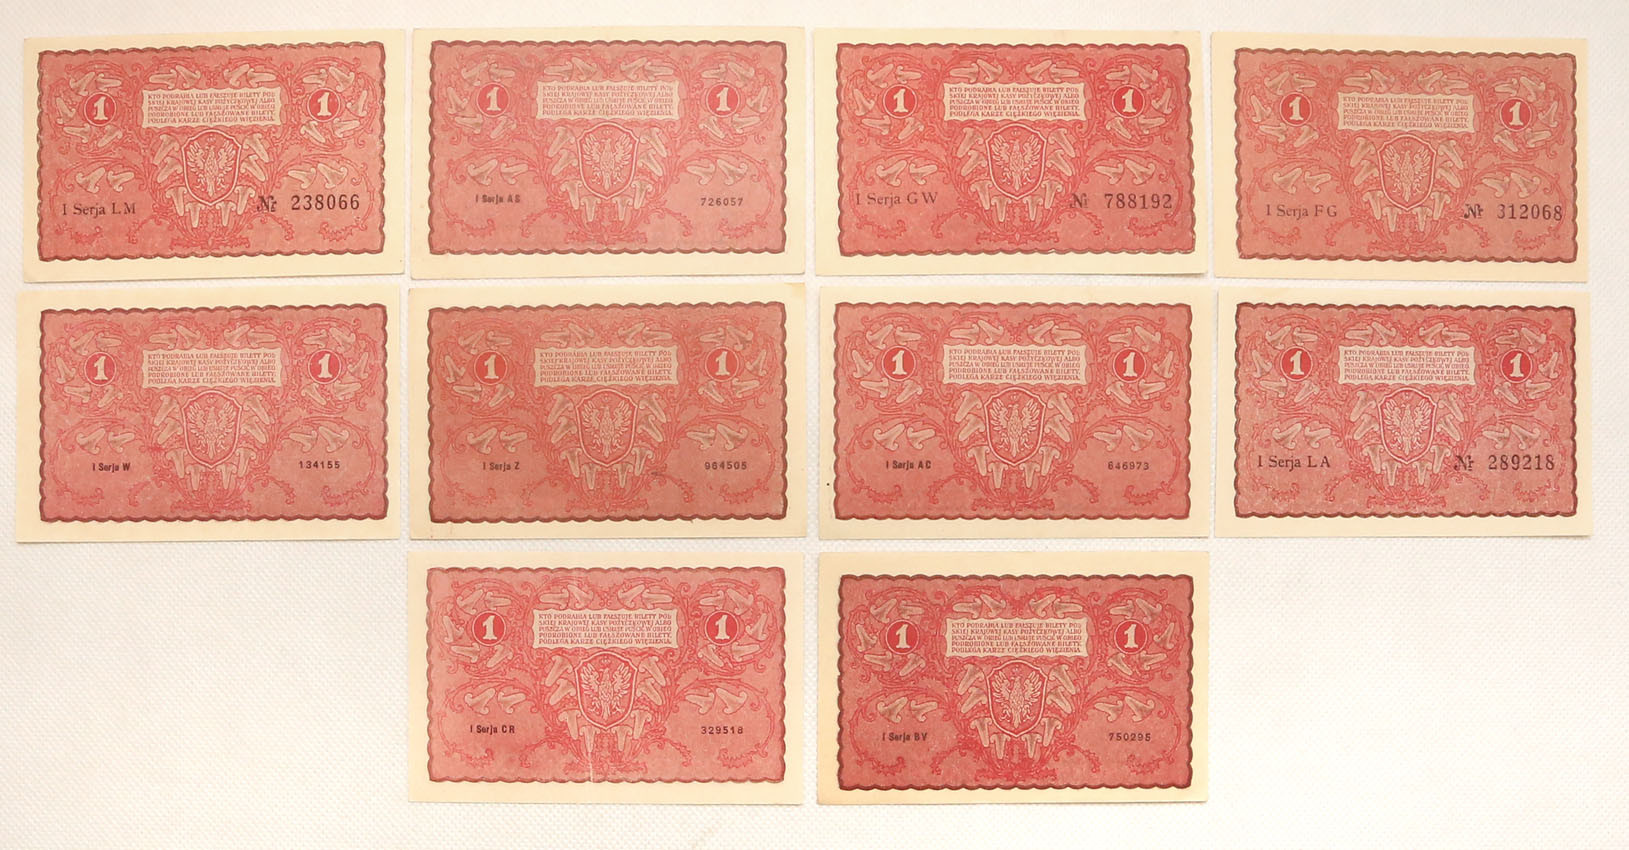 1 marka polska 1919, zestaw 10 banknotów